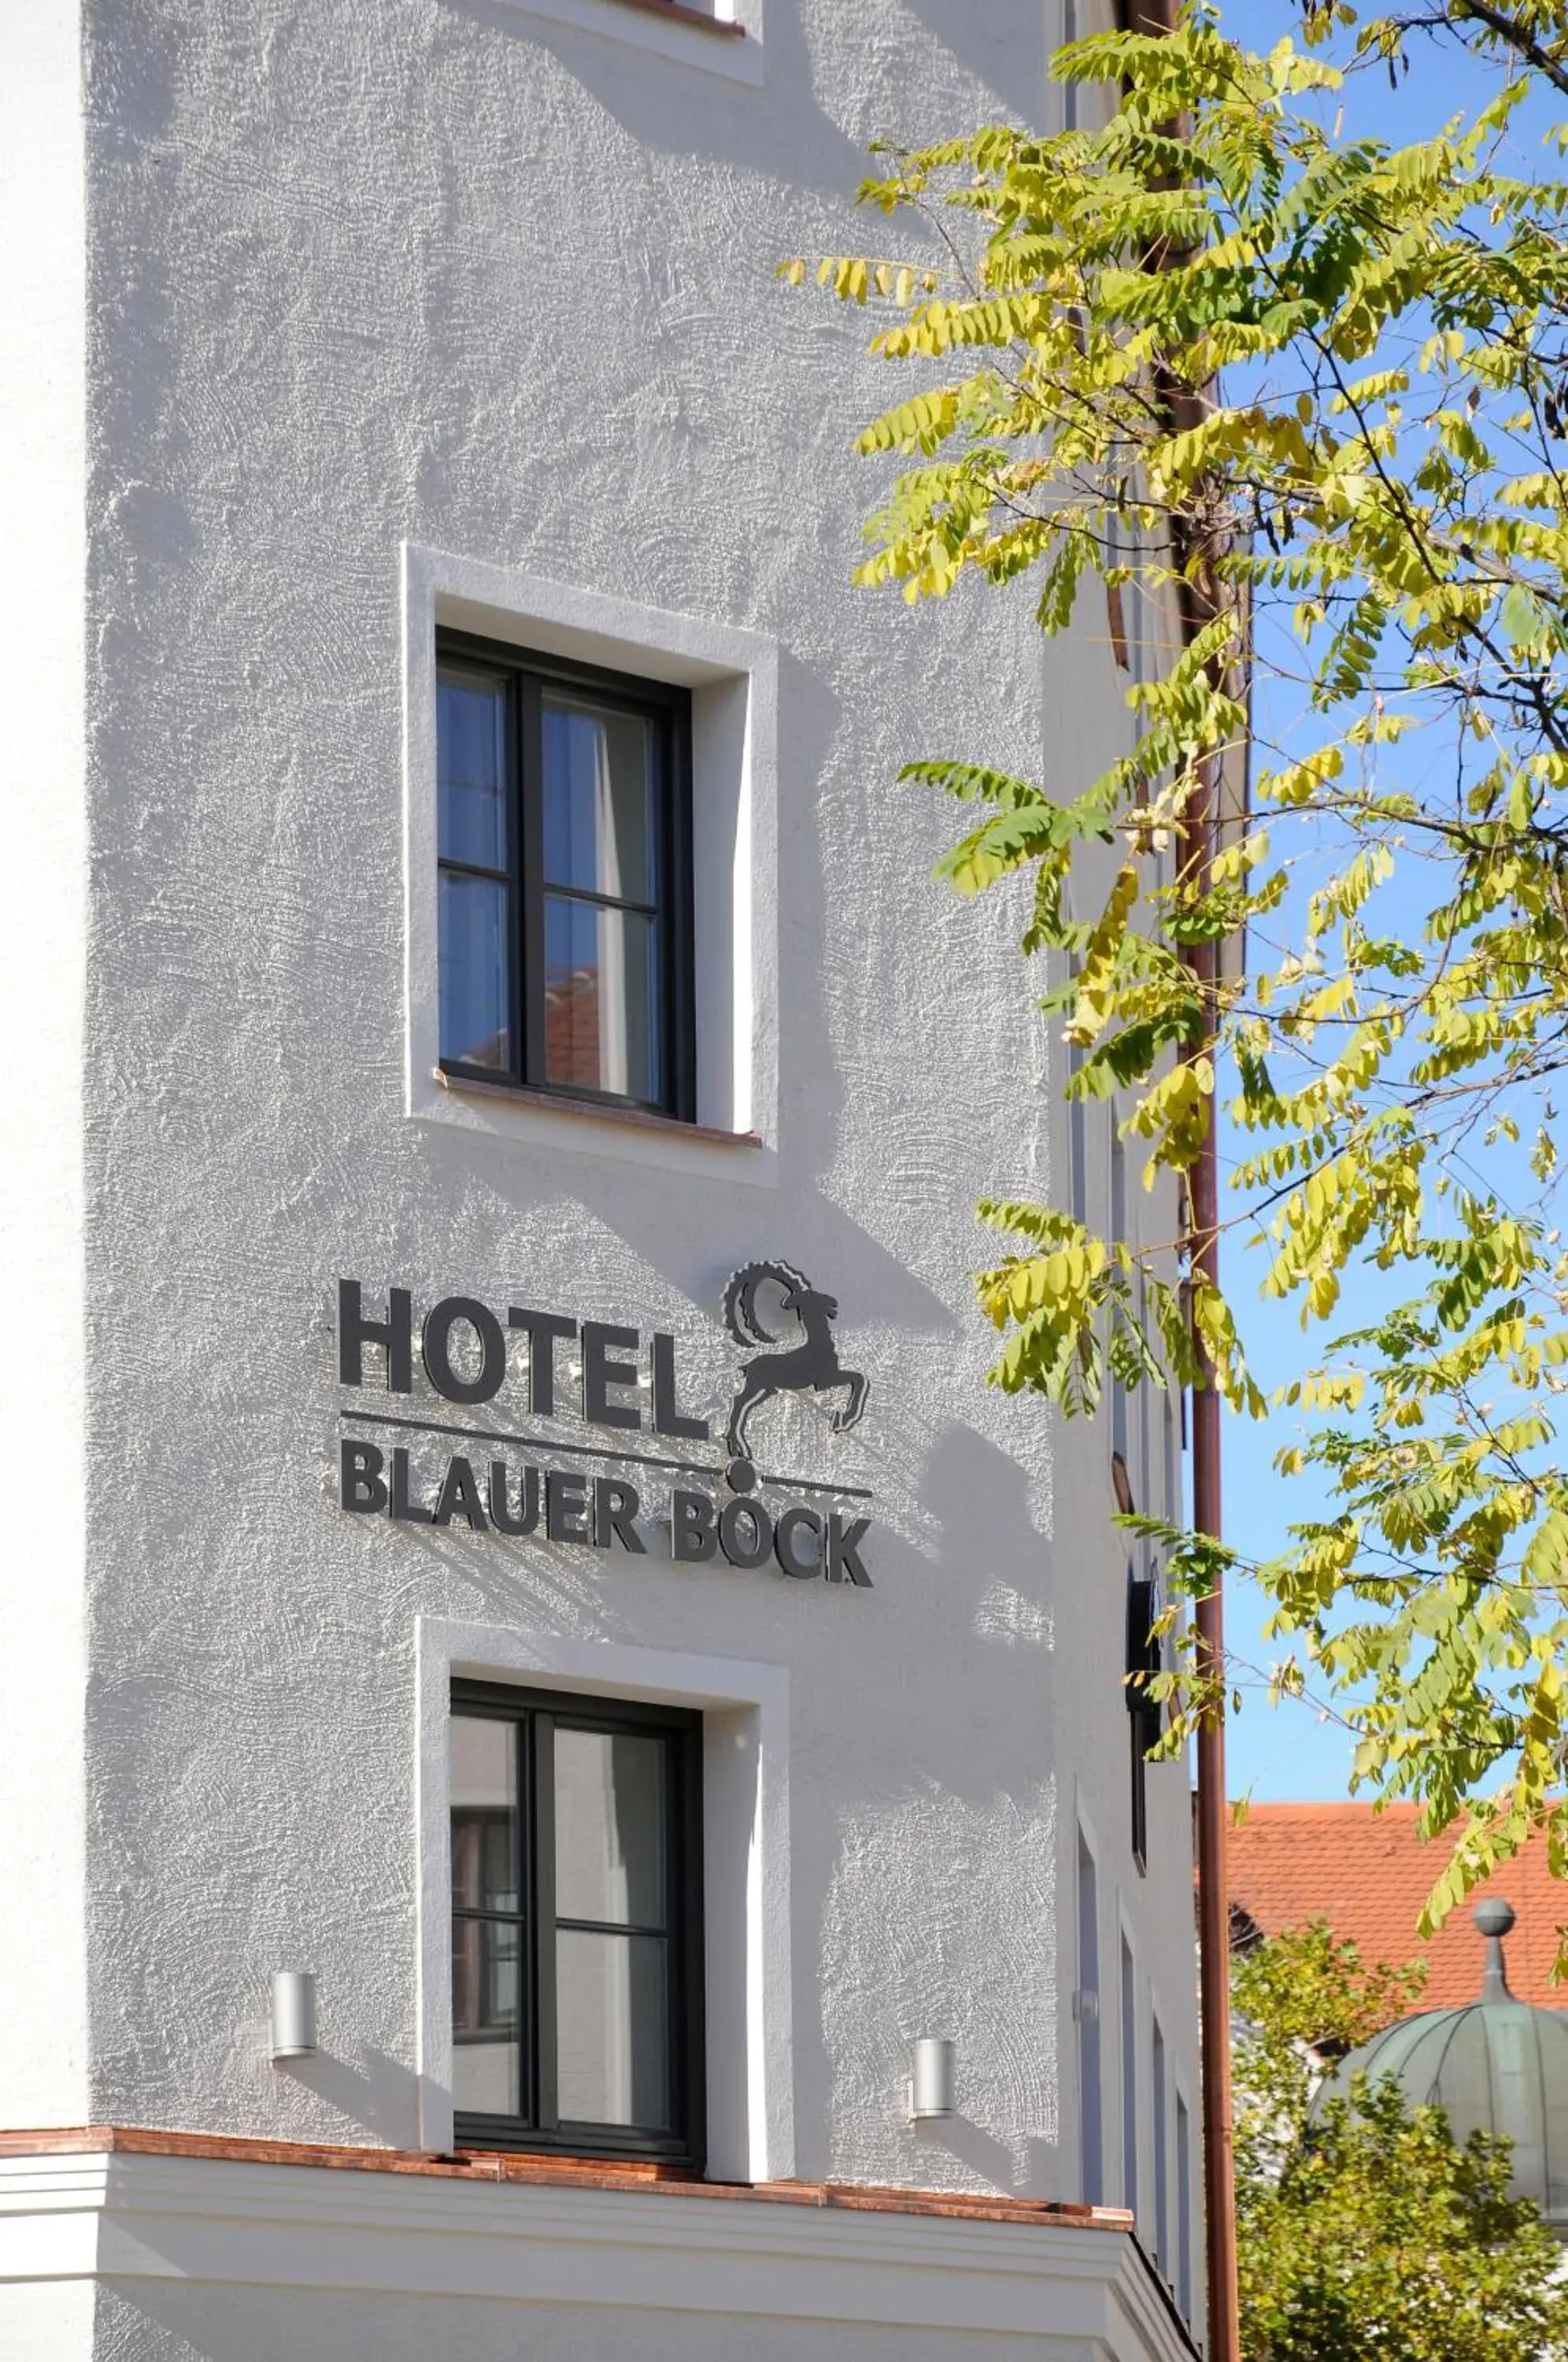 Facade/entrance, Property Building in Hotel Blauer Bock